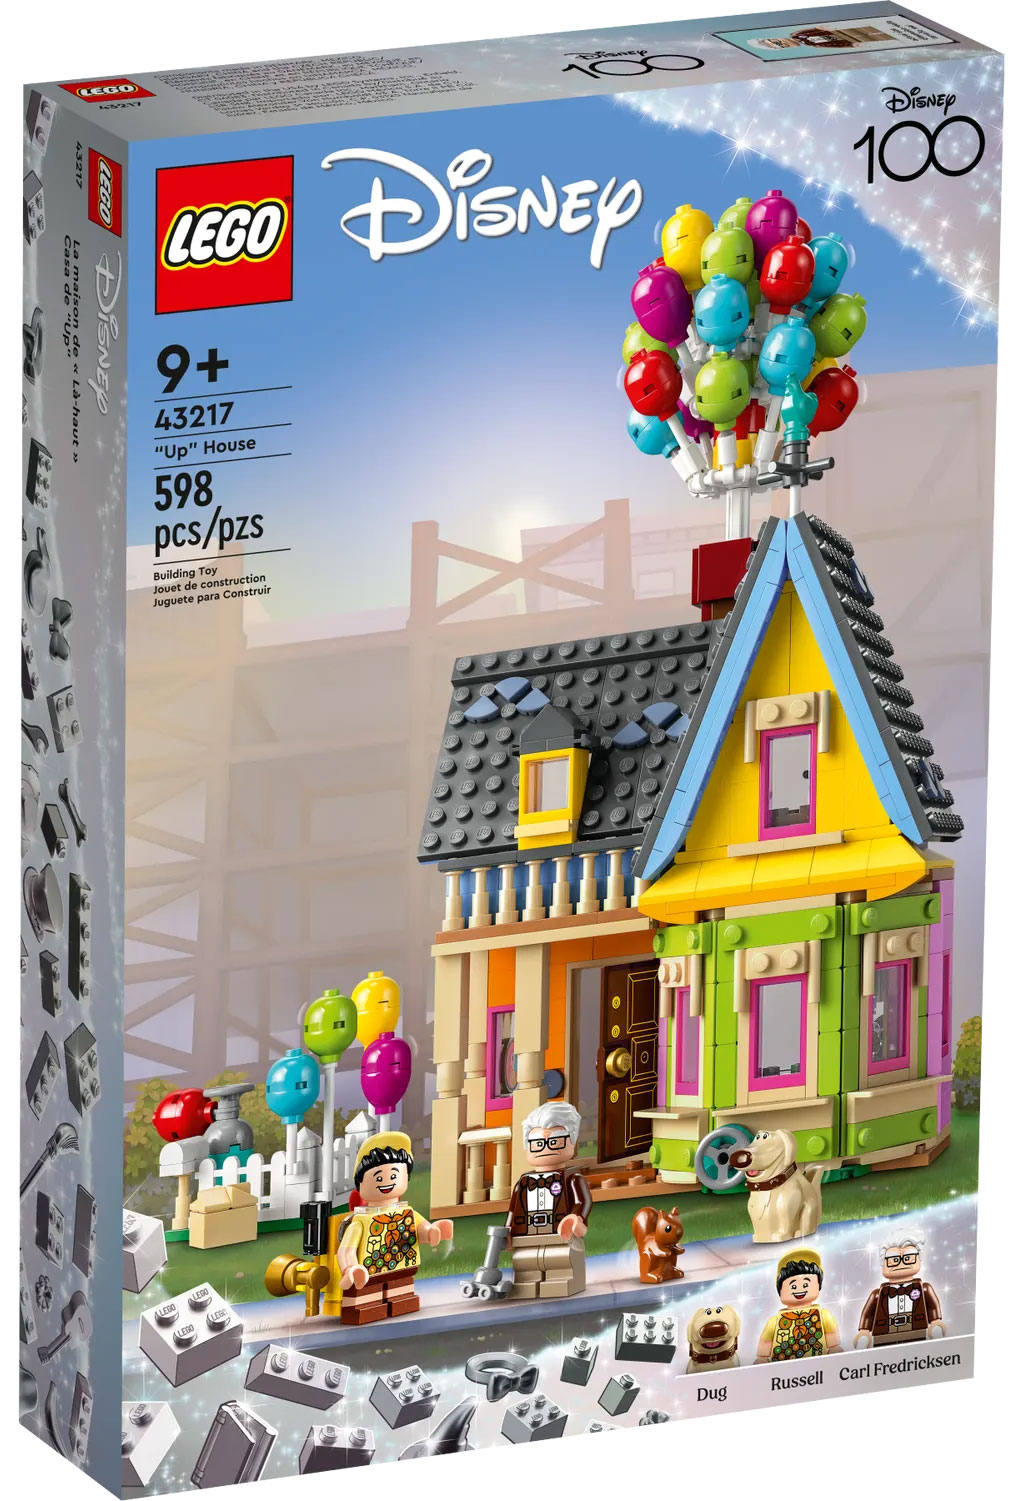 LEGO Disney 43217 pas cher, La maison de Là-haut